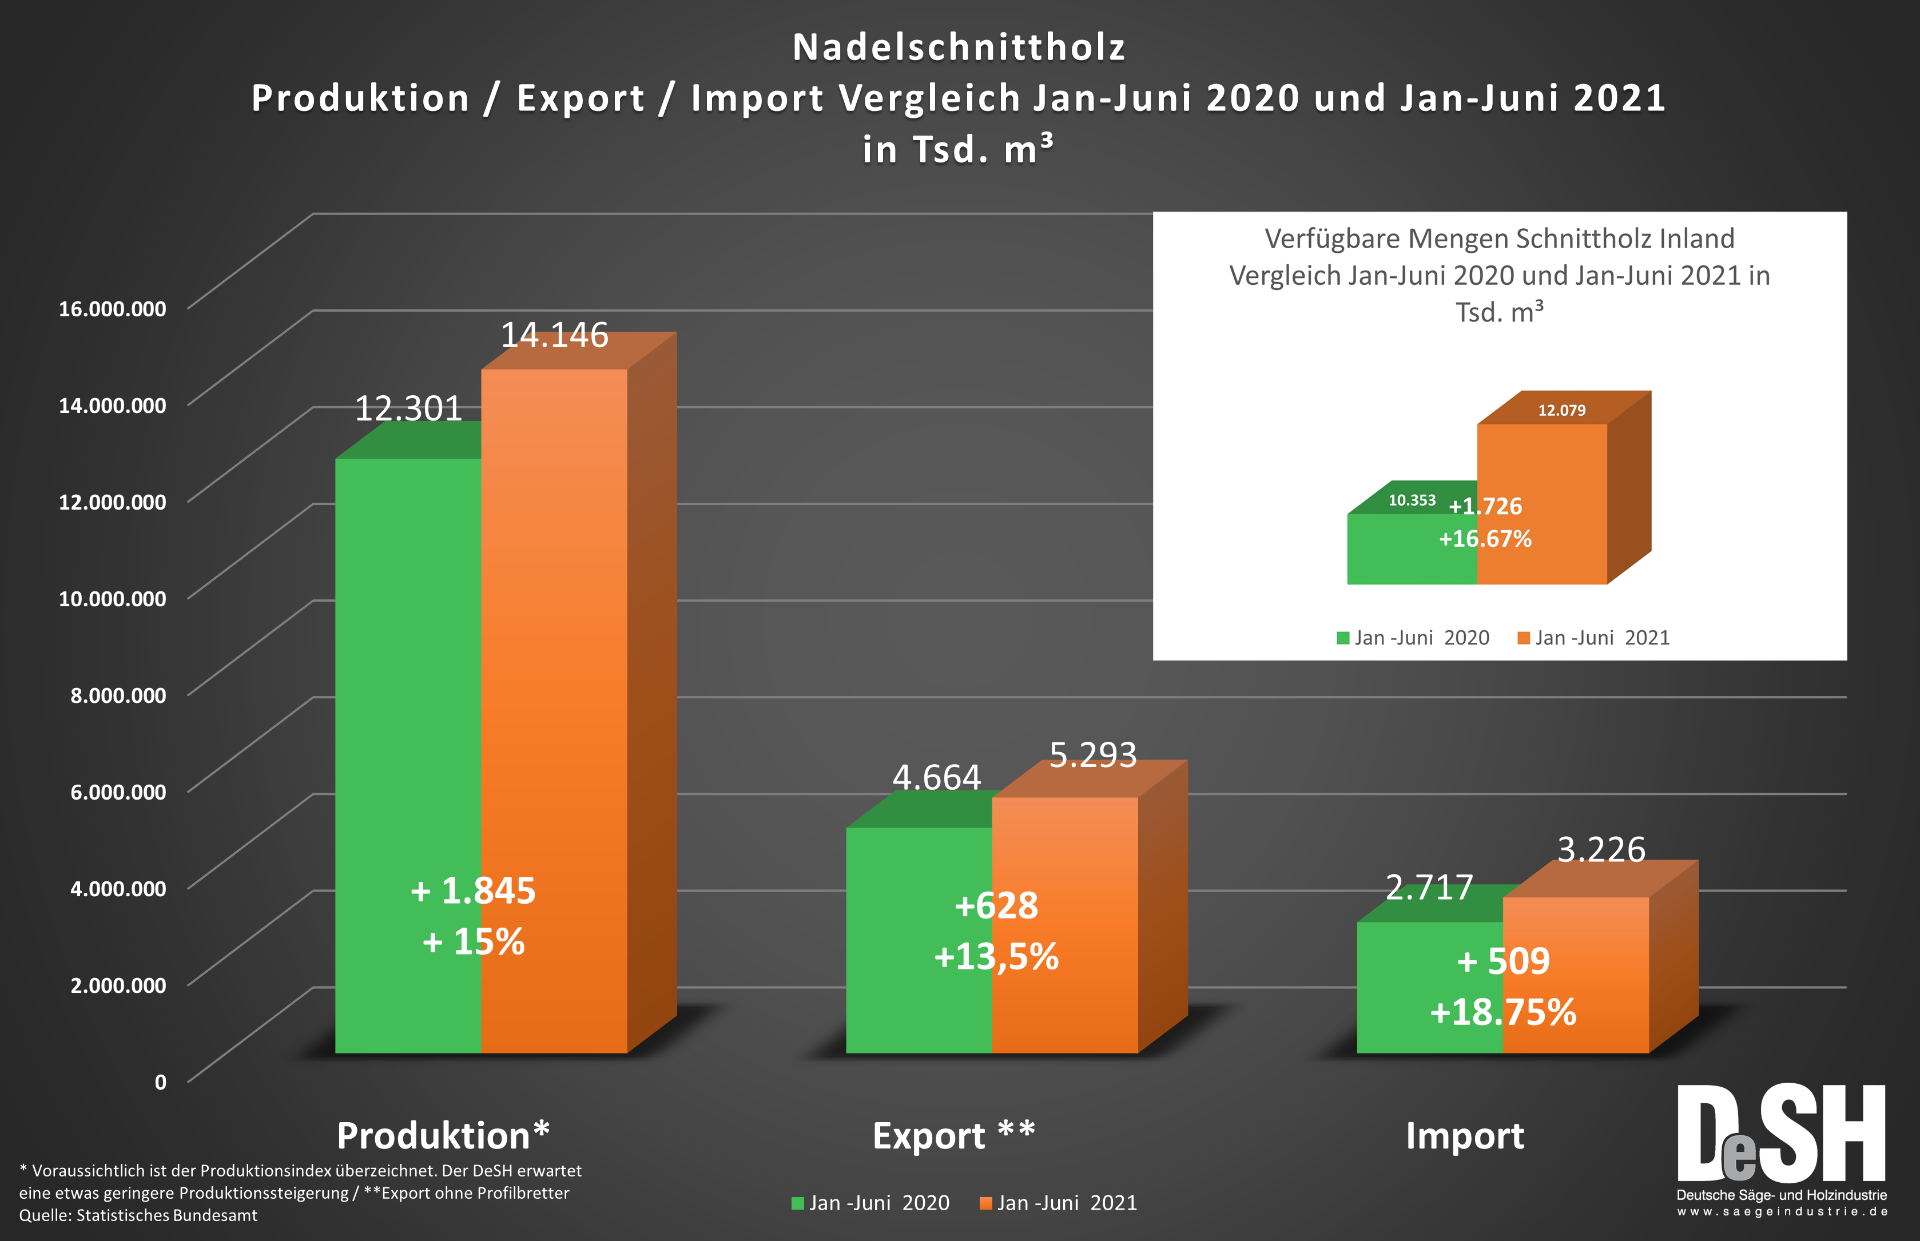 Nadelschnittholzproduktion Vergleich Jan-Juni 2020 und 2021.png